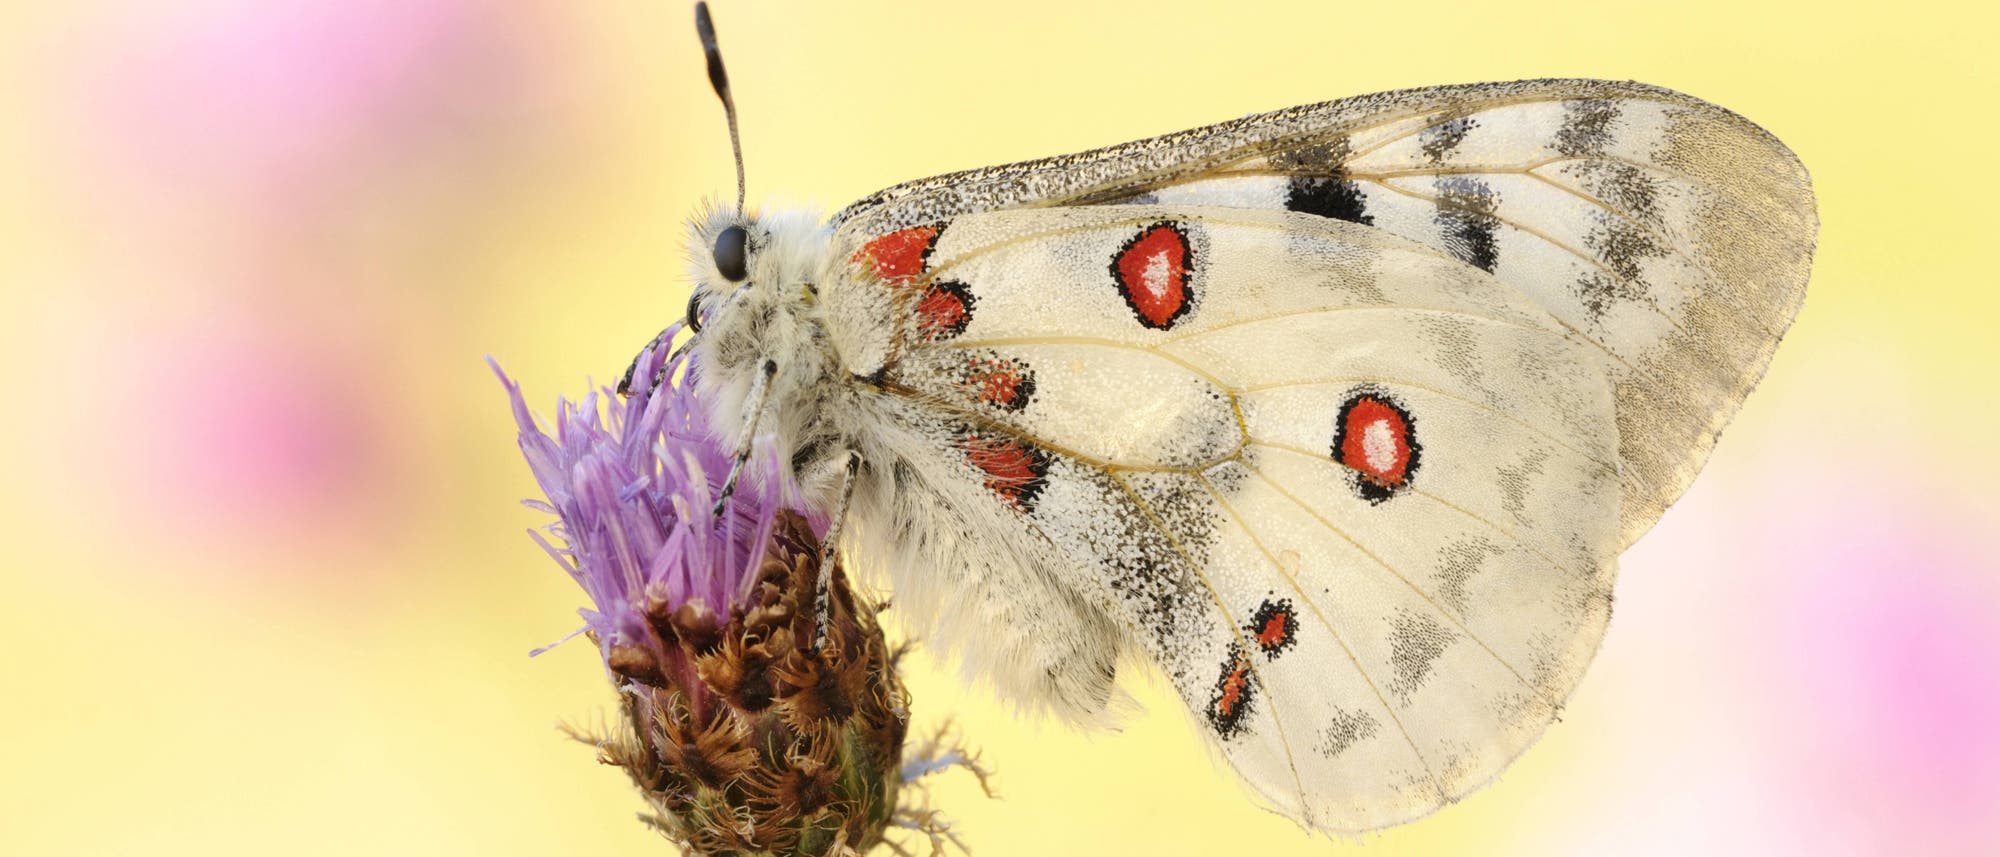 Ein Mosel-Apollofalter sitzt auf der violetten Blüte einer Pflanze. Der Falter ist weiß mit schwarzen Flecken und roten Augenflecken. Die Flügel sind zusammengefaltet und der Falter ist von der Seite zu sehen. Der Hintergrund ist verschwommen gelb und pink.